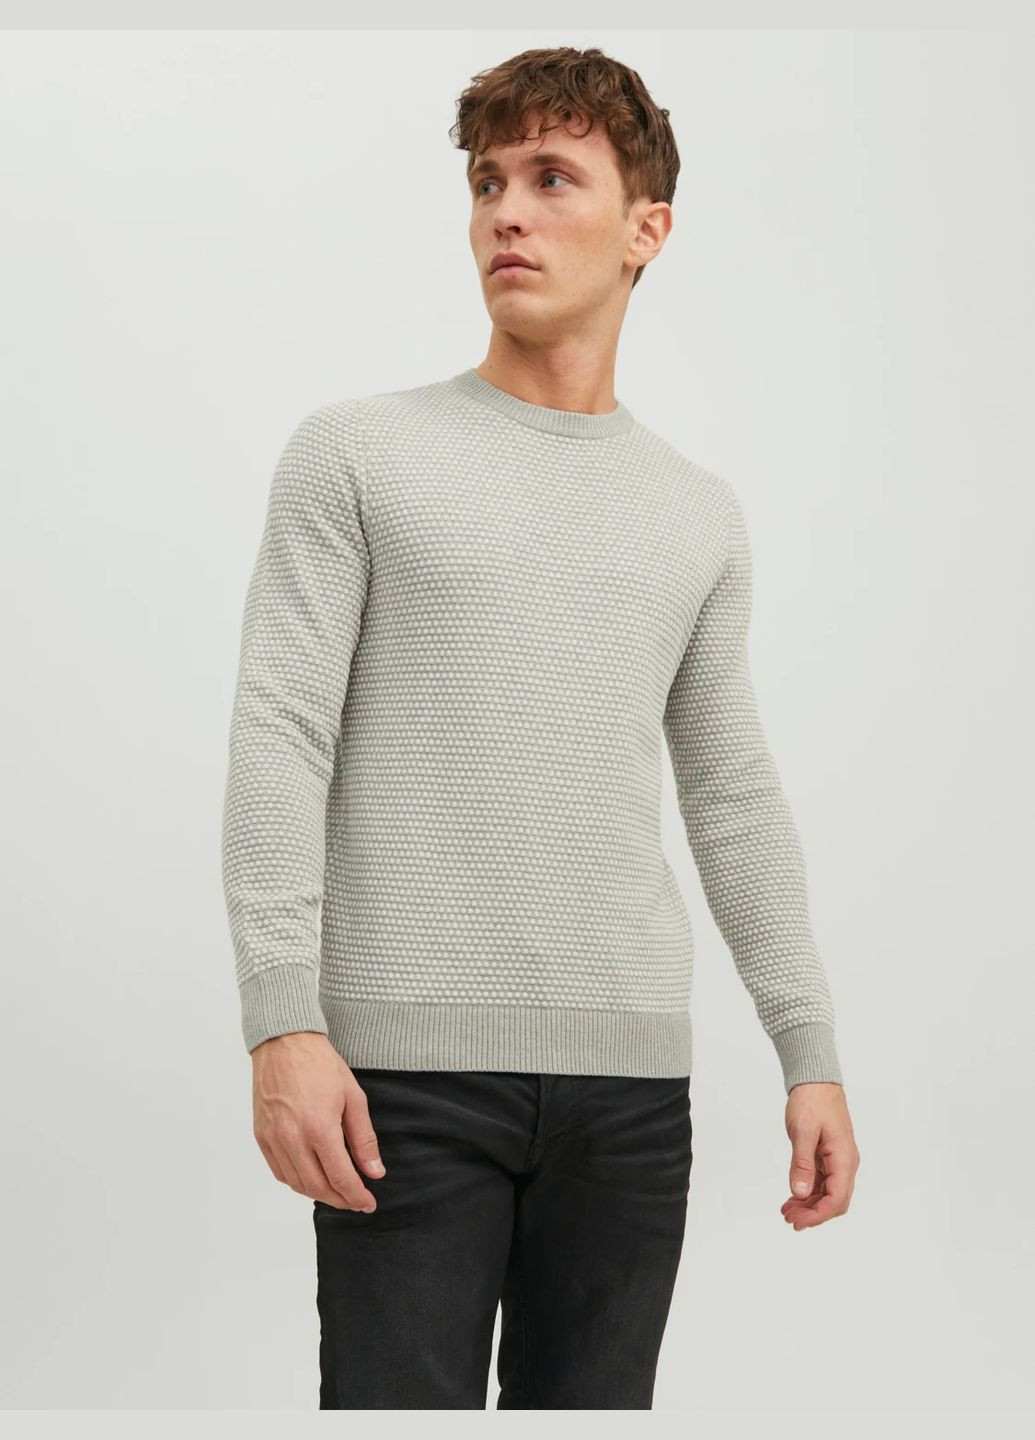 Серый демисезонный пуловер JACK&JONES Eatlas 12212816